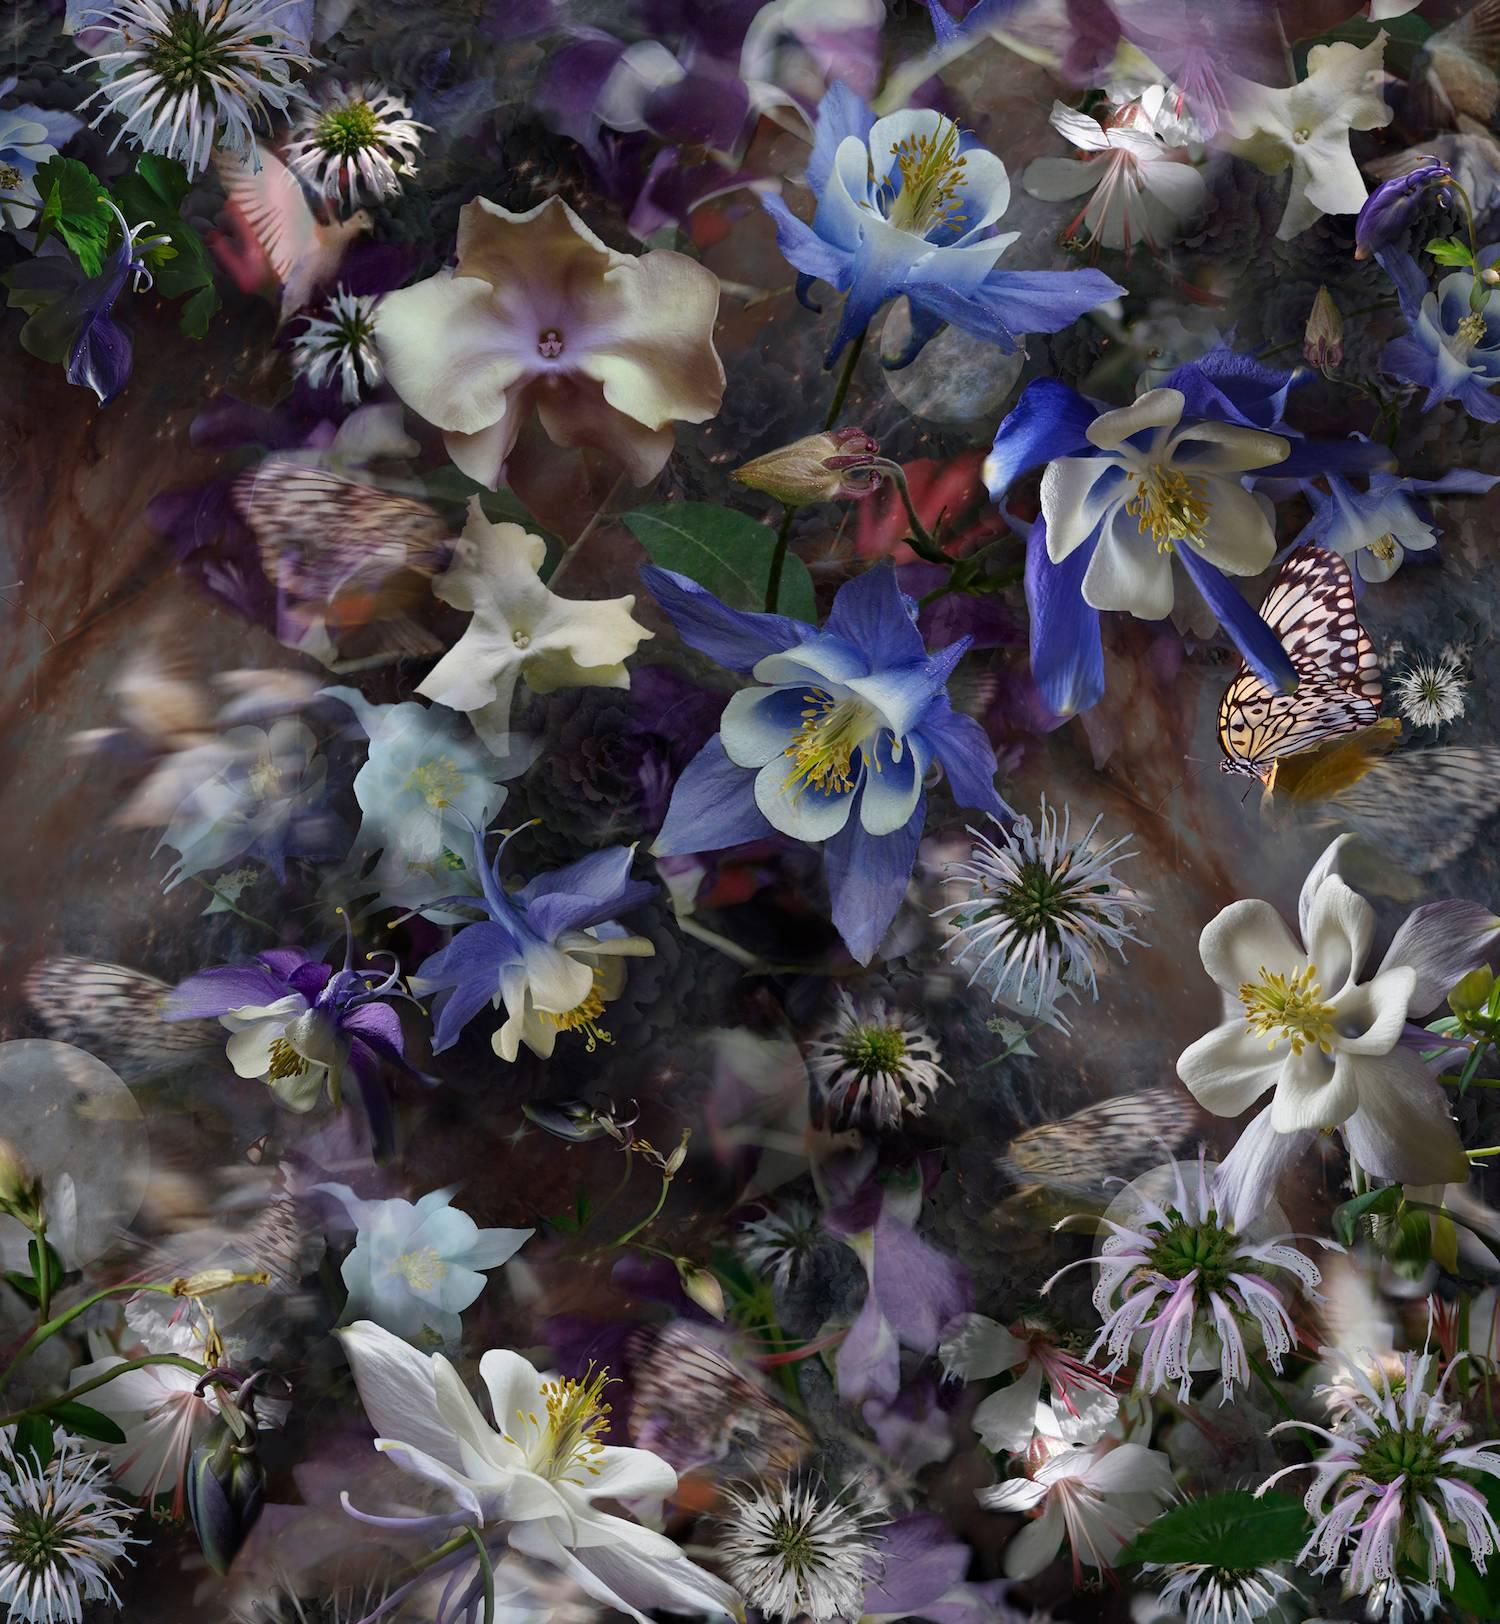 Lisa A. Frank Color Photograph – Columbine: Die Mysterie von fünf Tauben, geschichtete Bilder von Blumen in Violettblau